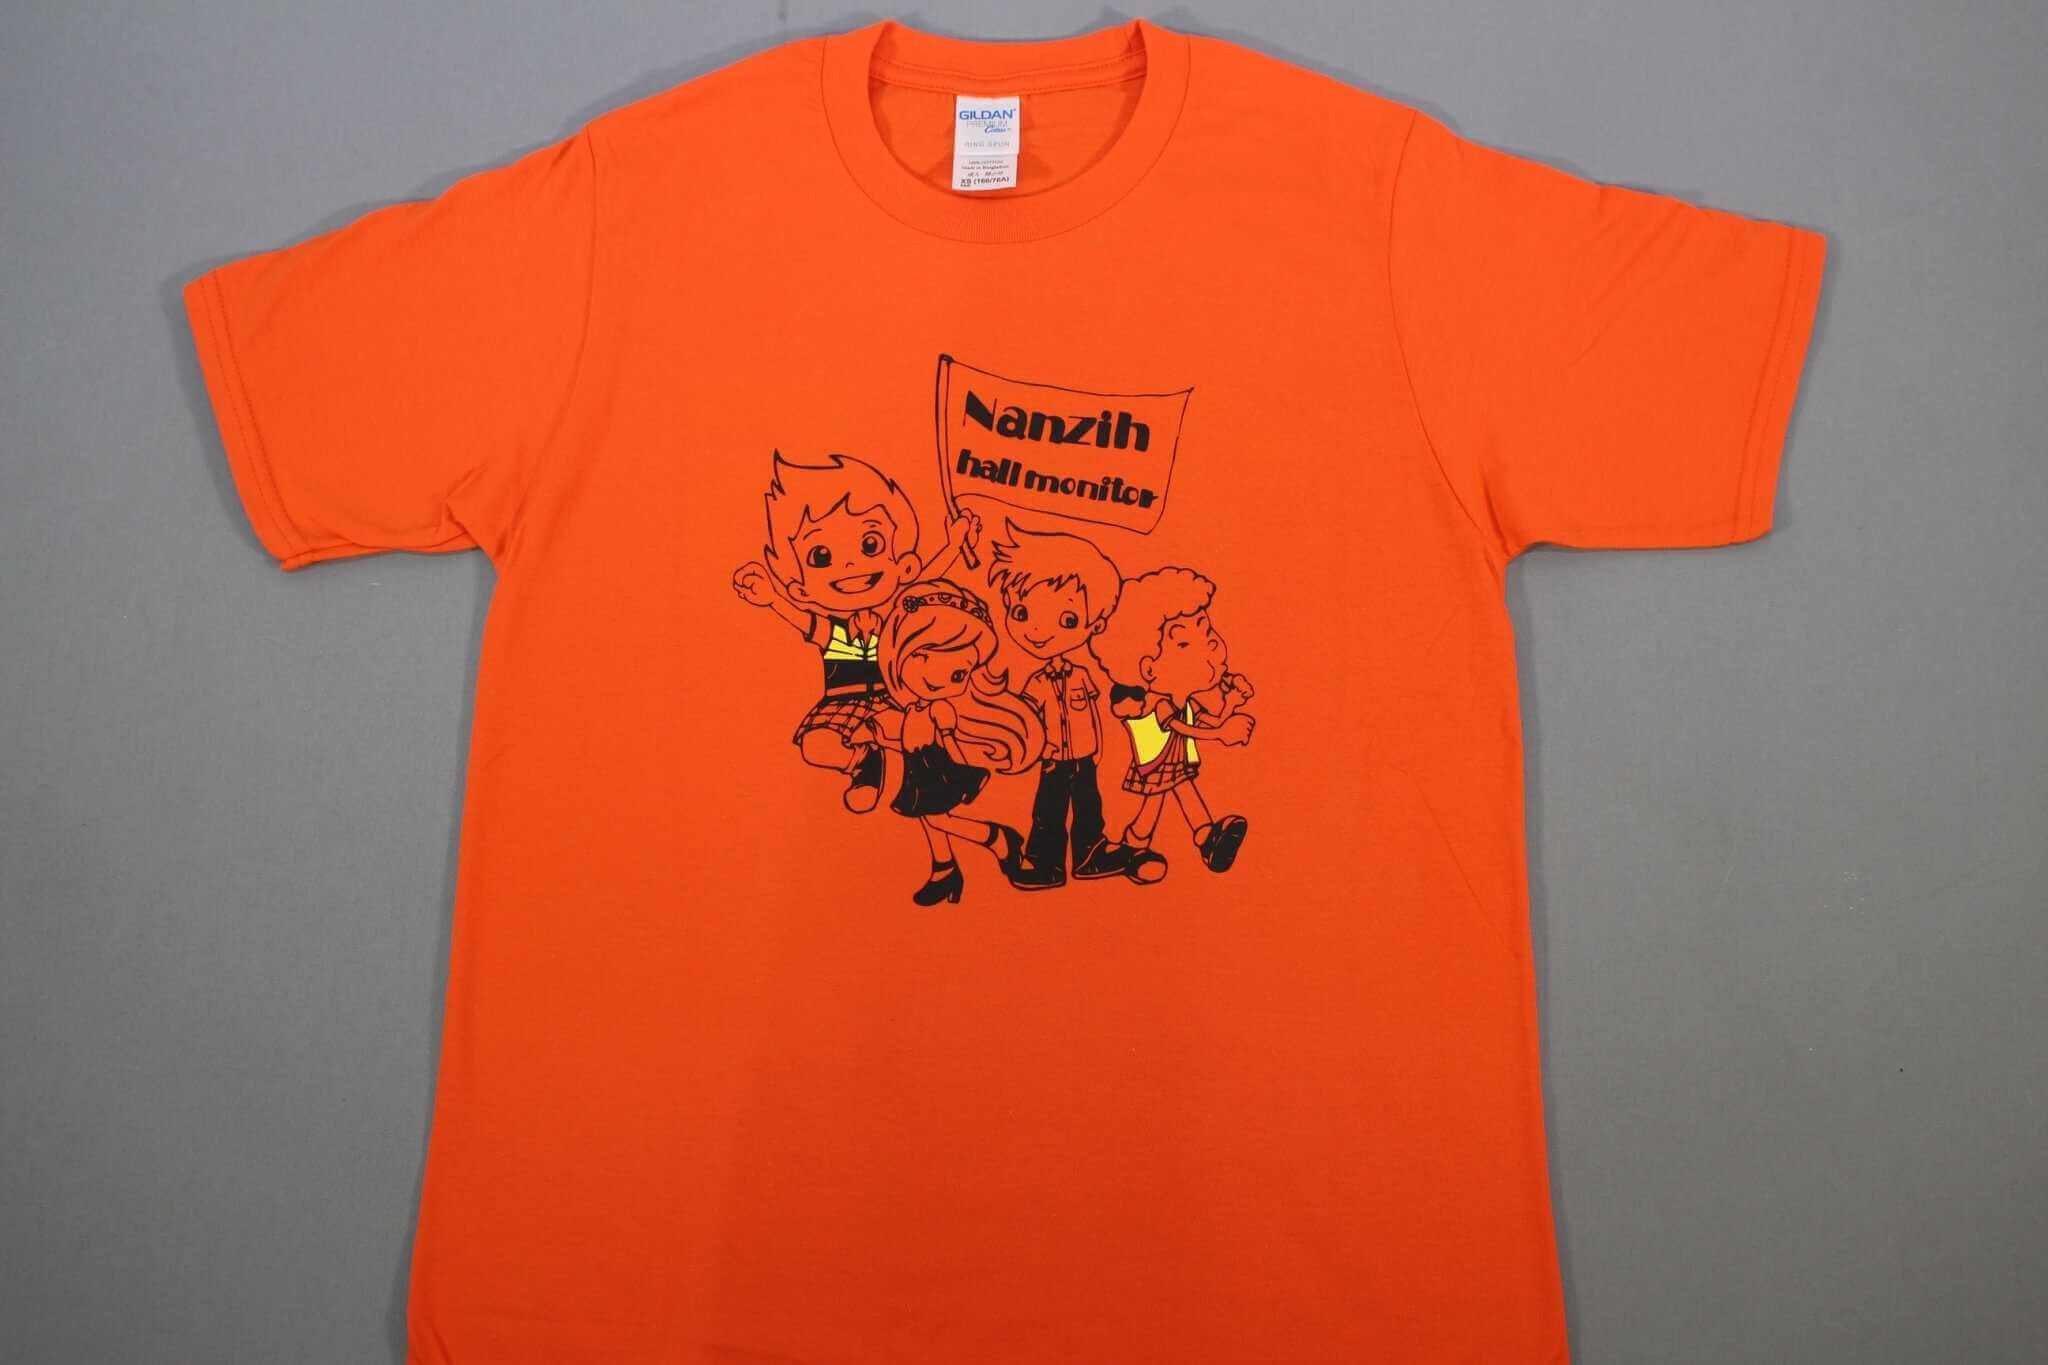 客製化T恤- Nanzih 105 106 班服的第1張圖(客製化公司制服、班服製作、團體服製作等示意或作品圖)